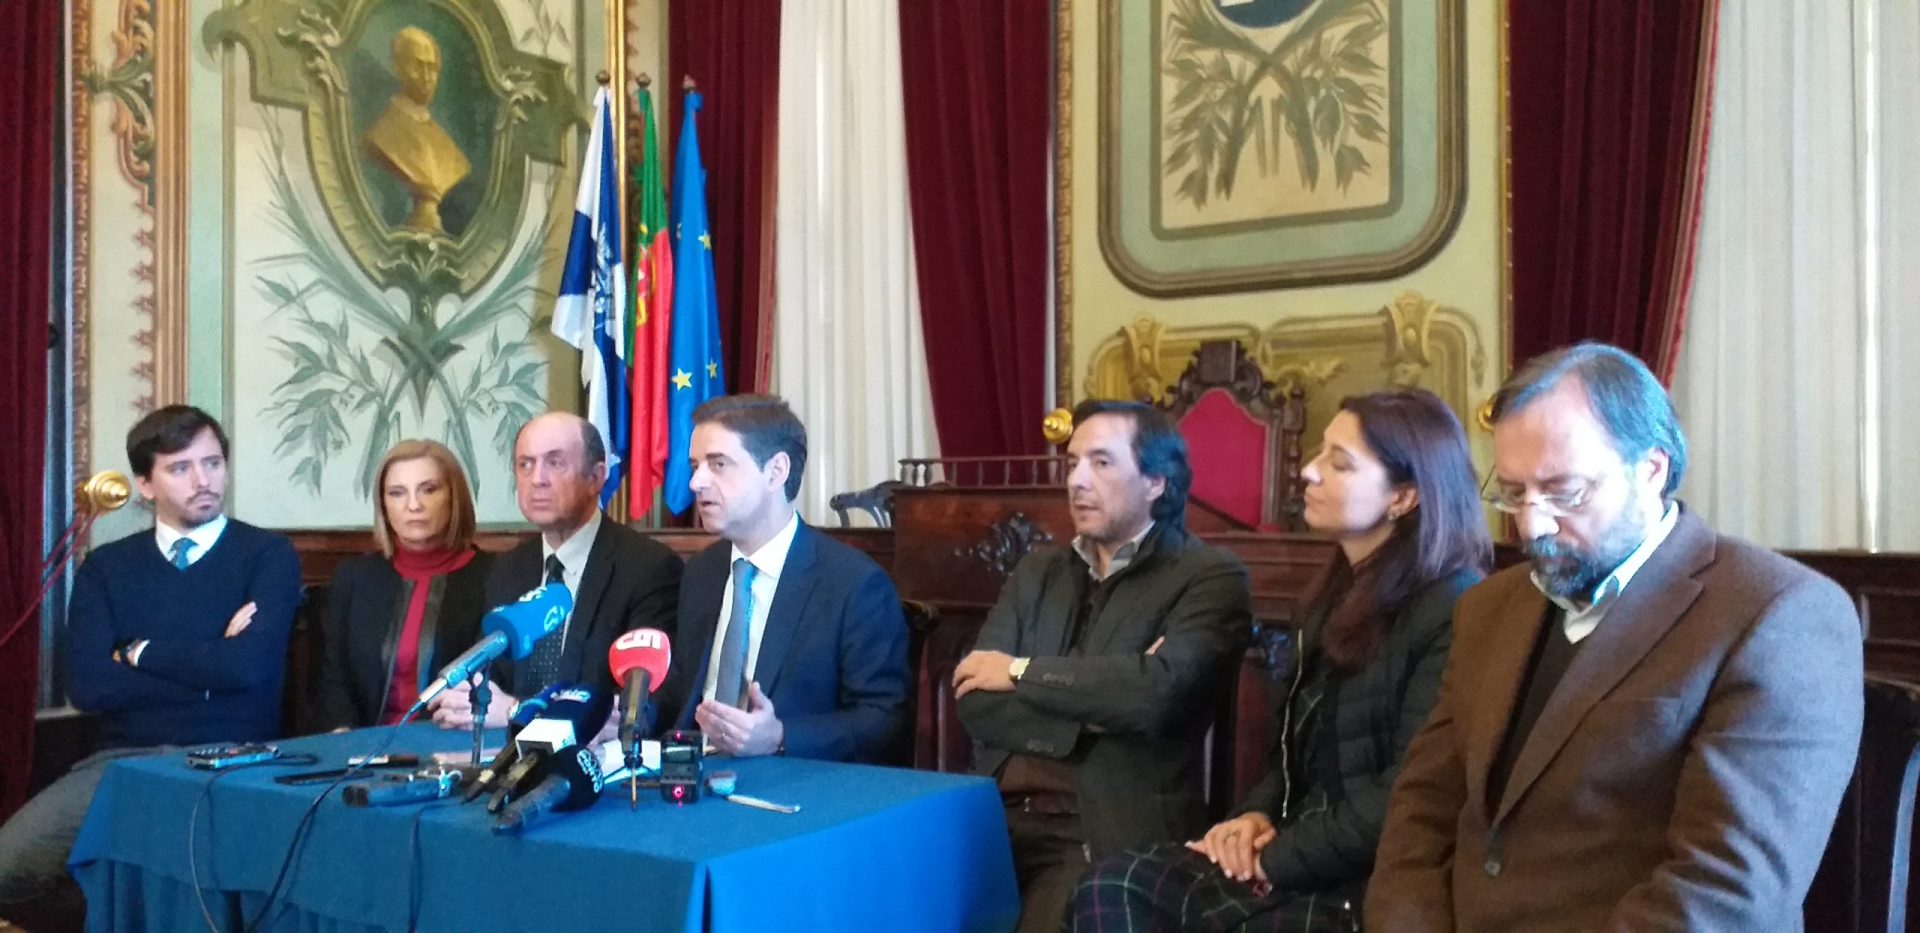 Câmara de Braga quer vender Estádio Municipal e só aguarda referendo no próximo mandato